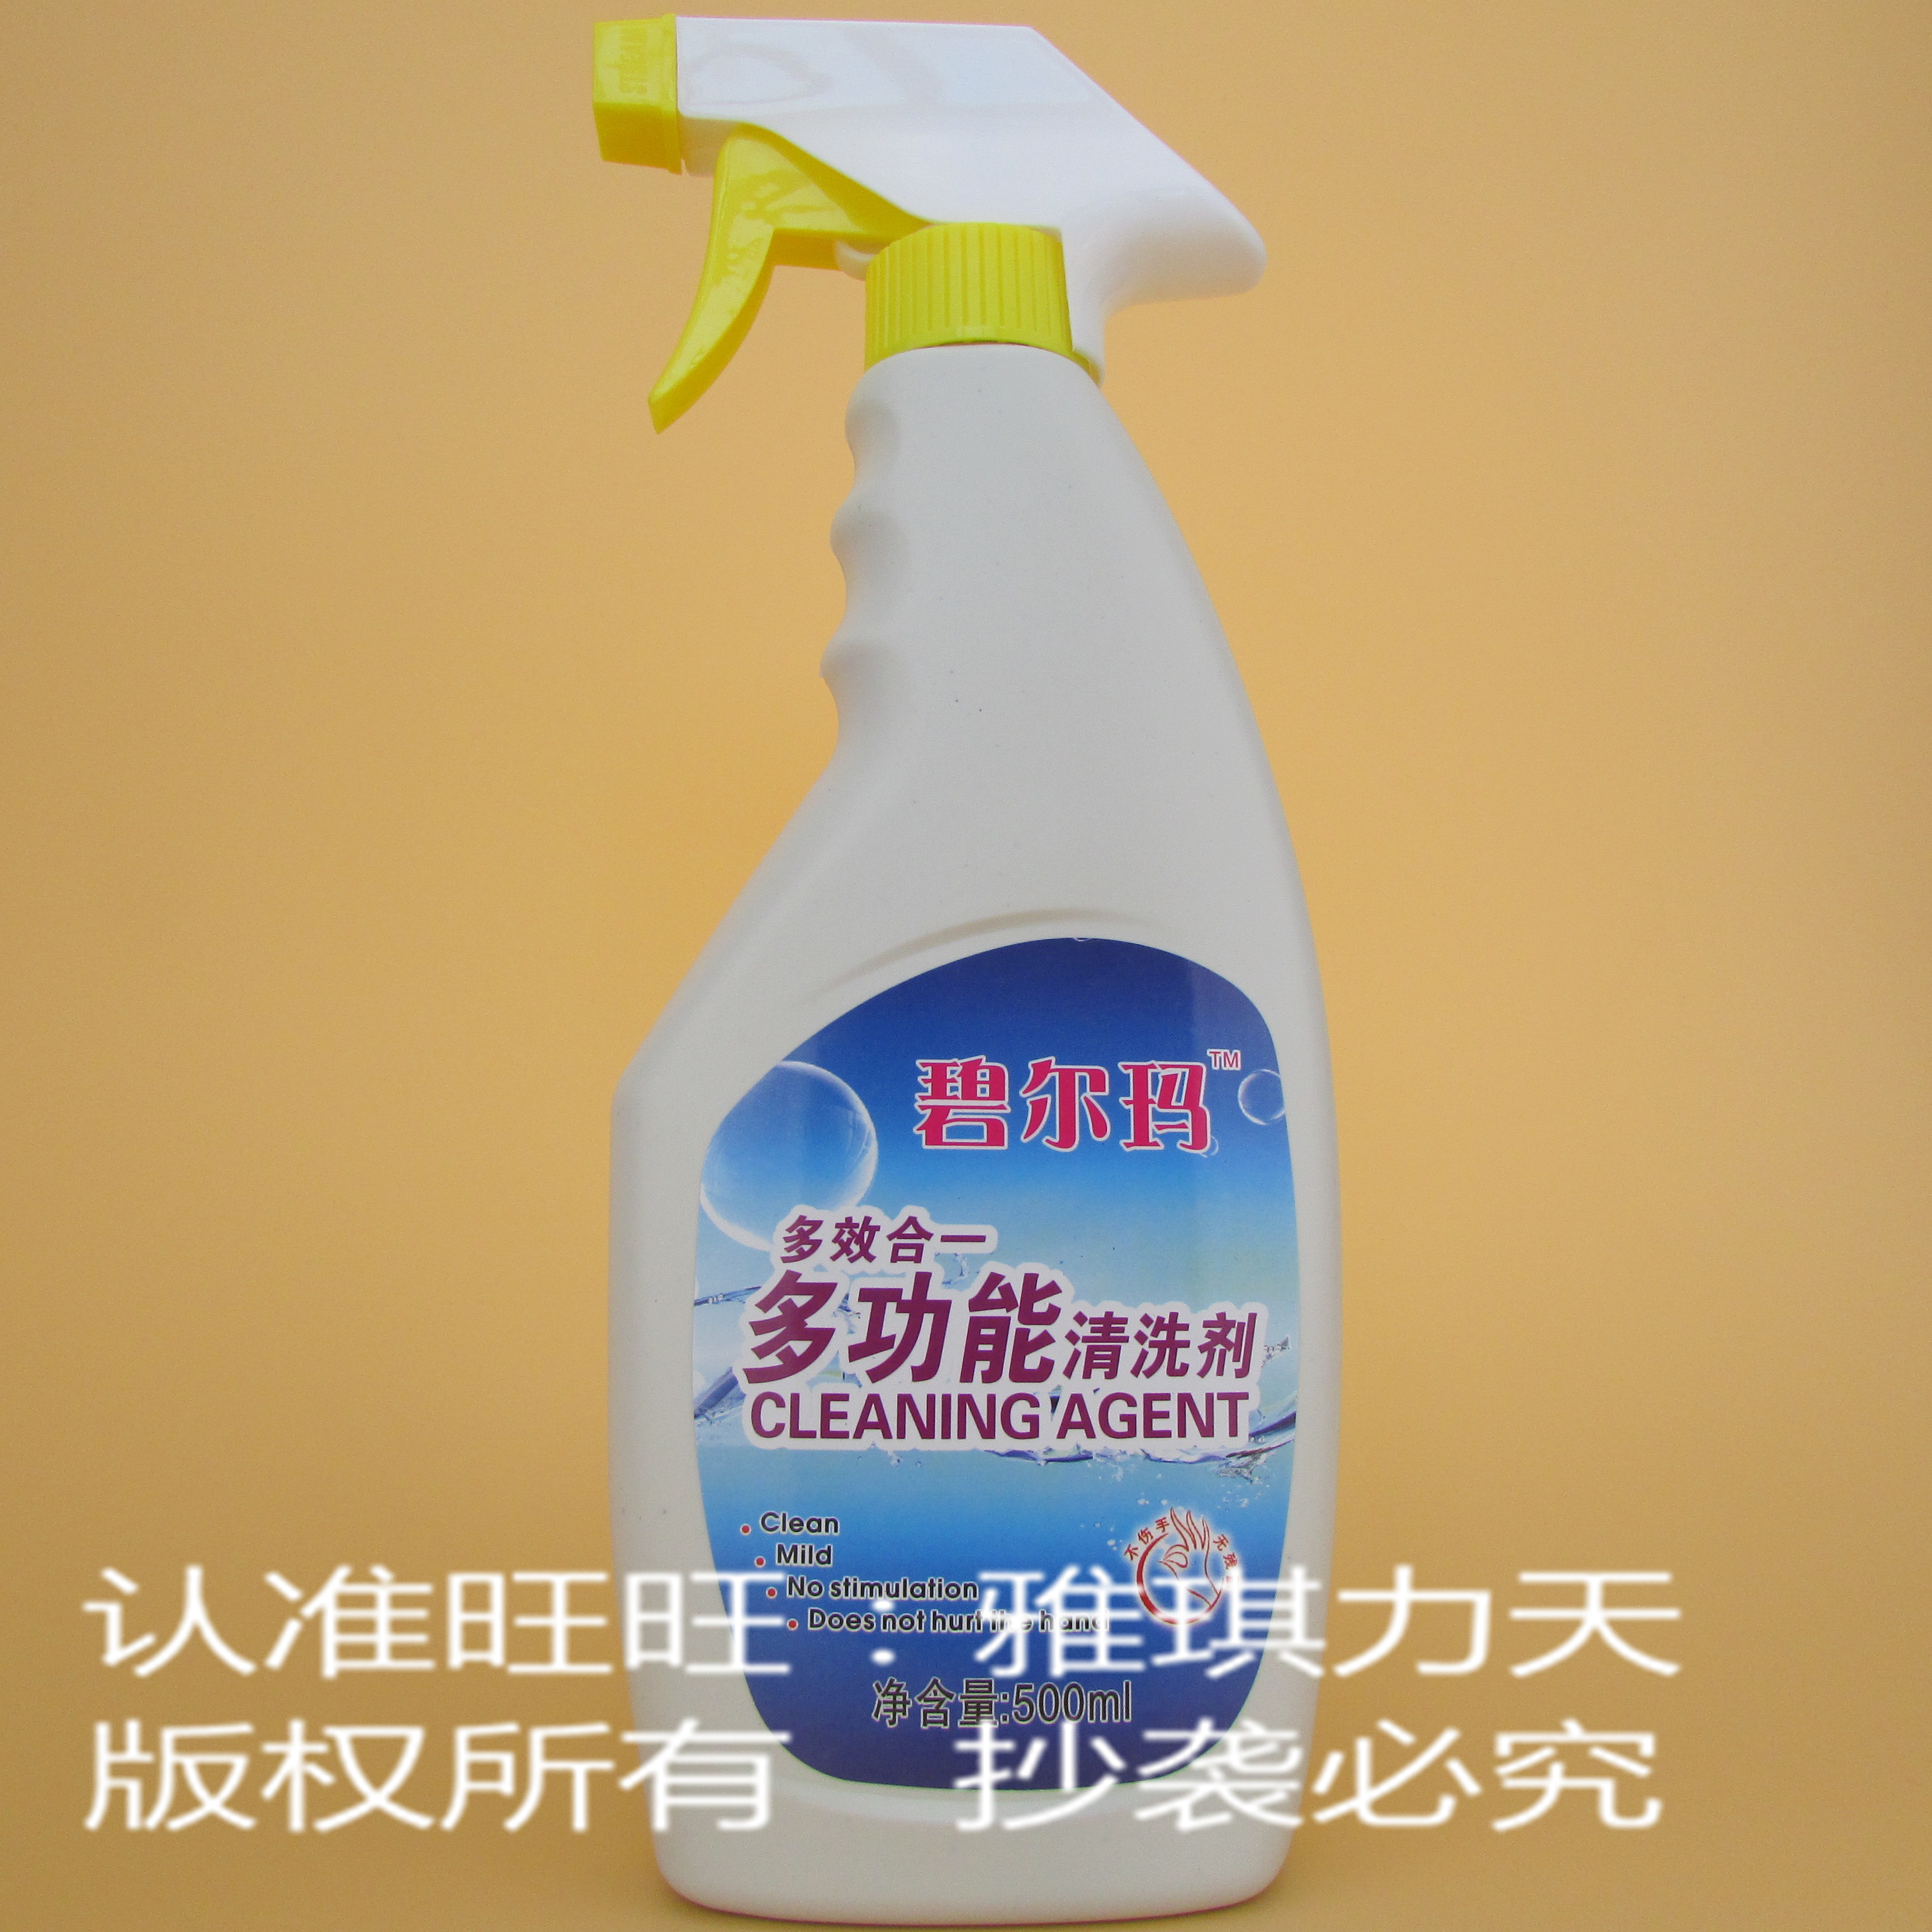 【官方直销】 雪后 碧儿玛多功能清洗剂 清洁剂 油污净 单瓶装